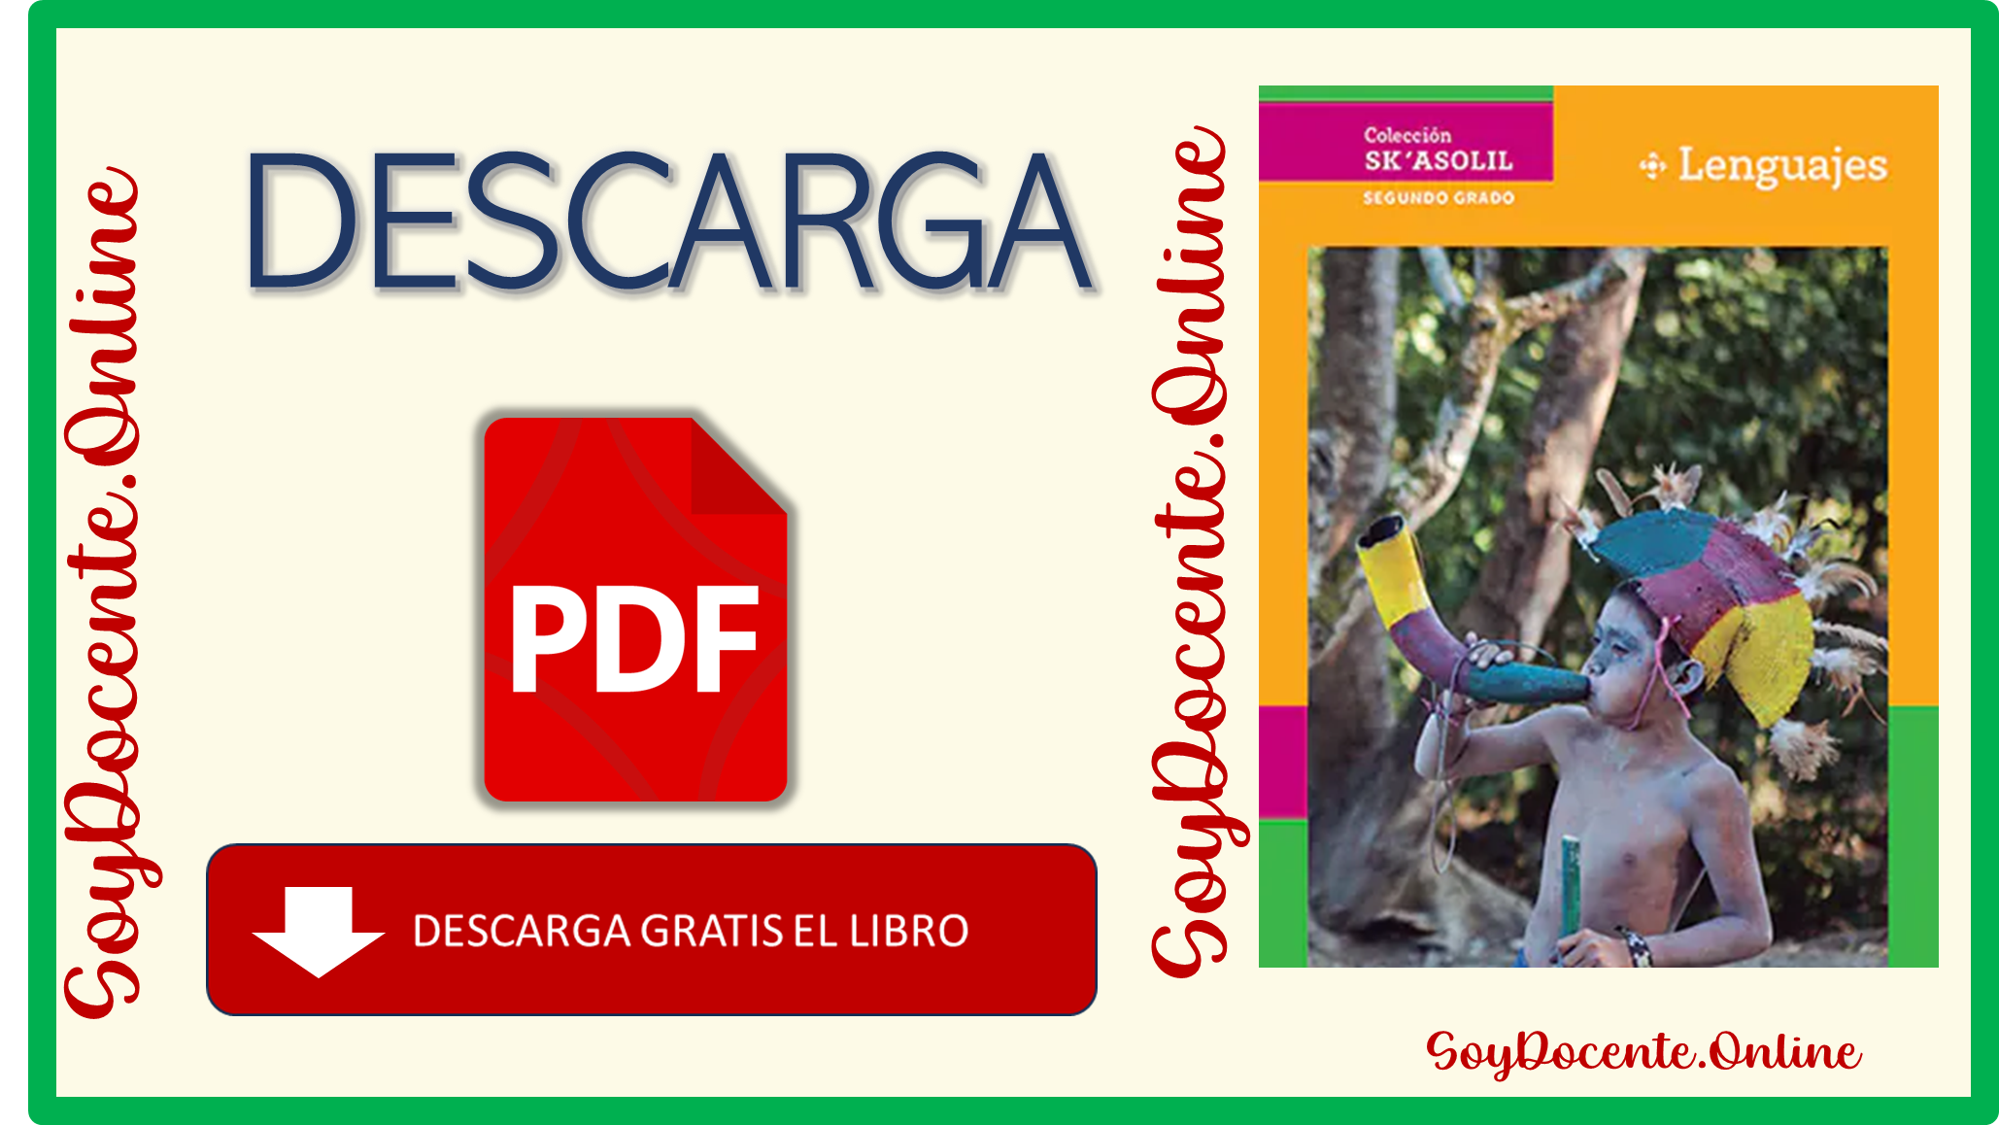 Descarga en PDF el libro Lenguajes segundo grado de Secundaria por la NEM, elaborado por la SEP y emitido por CONALITEG.